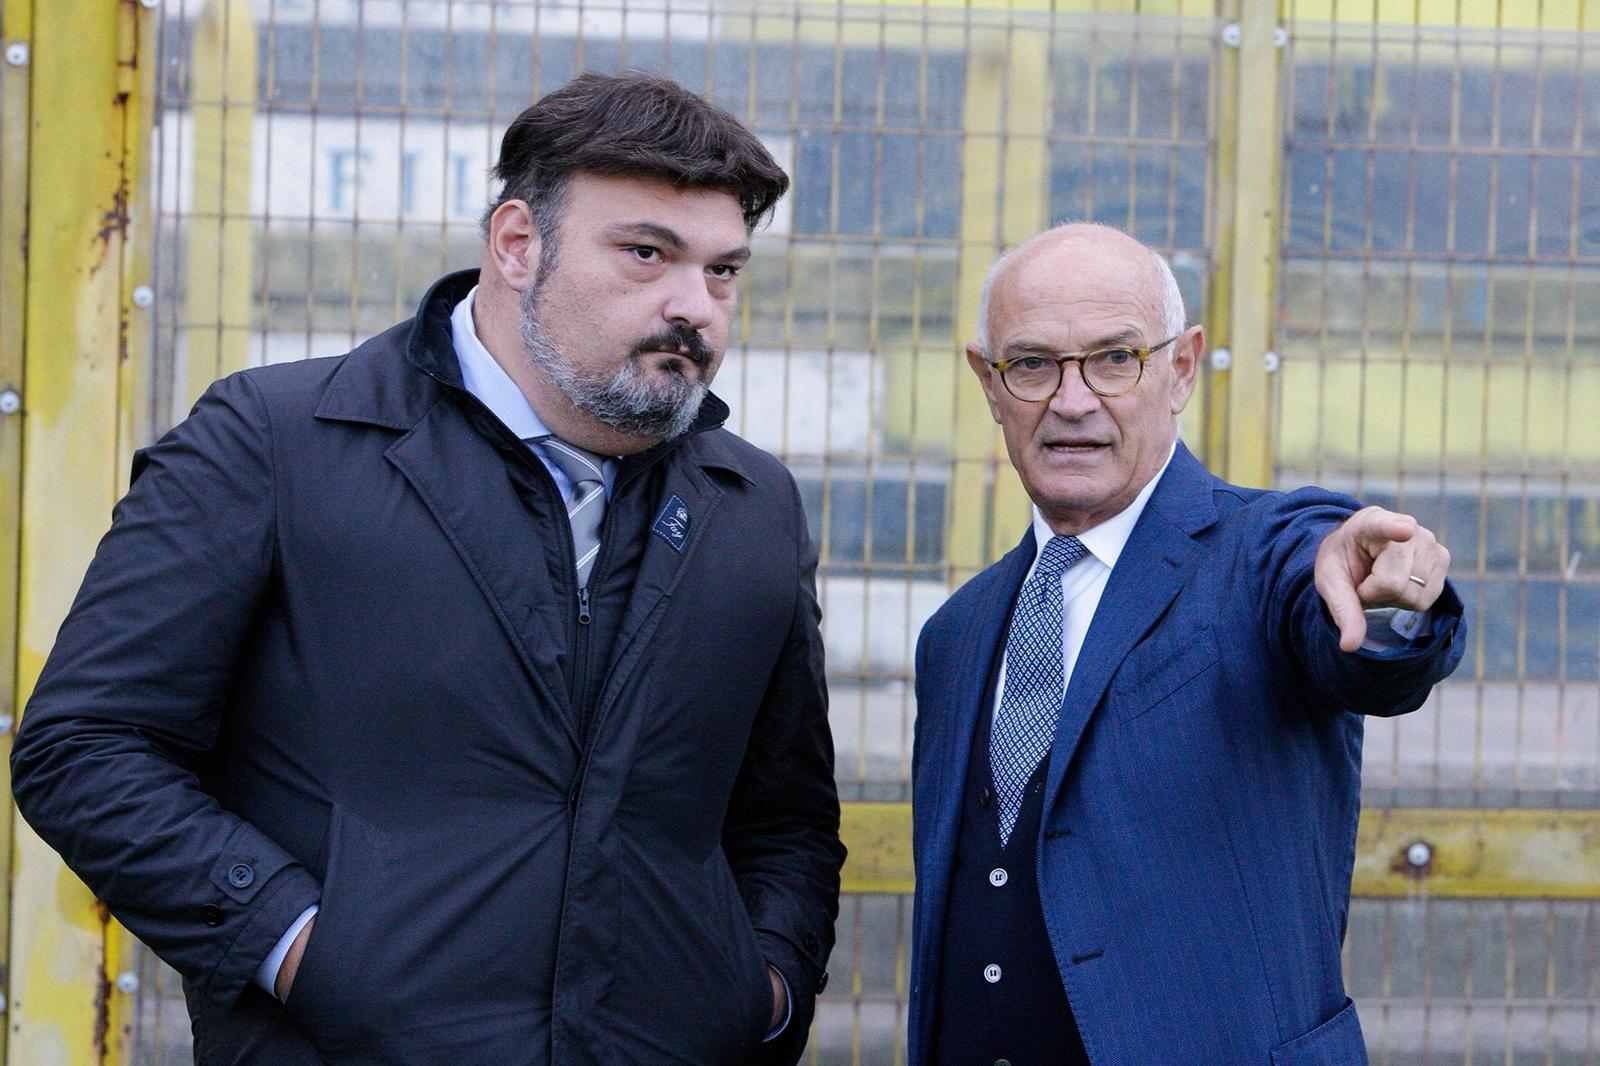 Juve Stabia, dimissioni del vicepresidente Palma: “Poca chiarezza da parte di alcuni dirigenti”